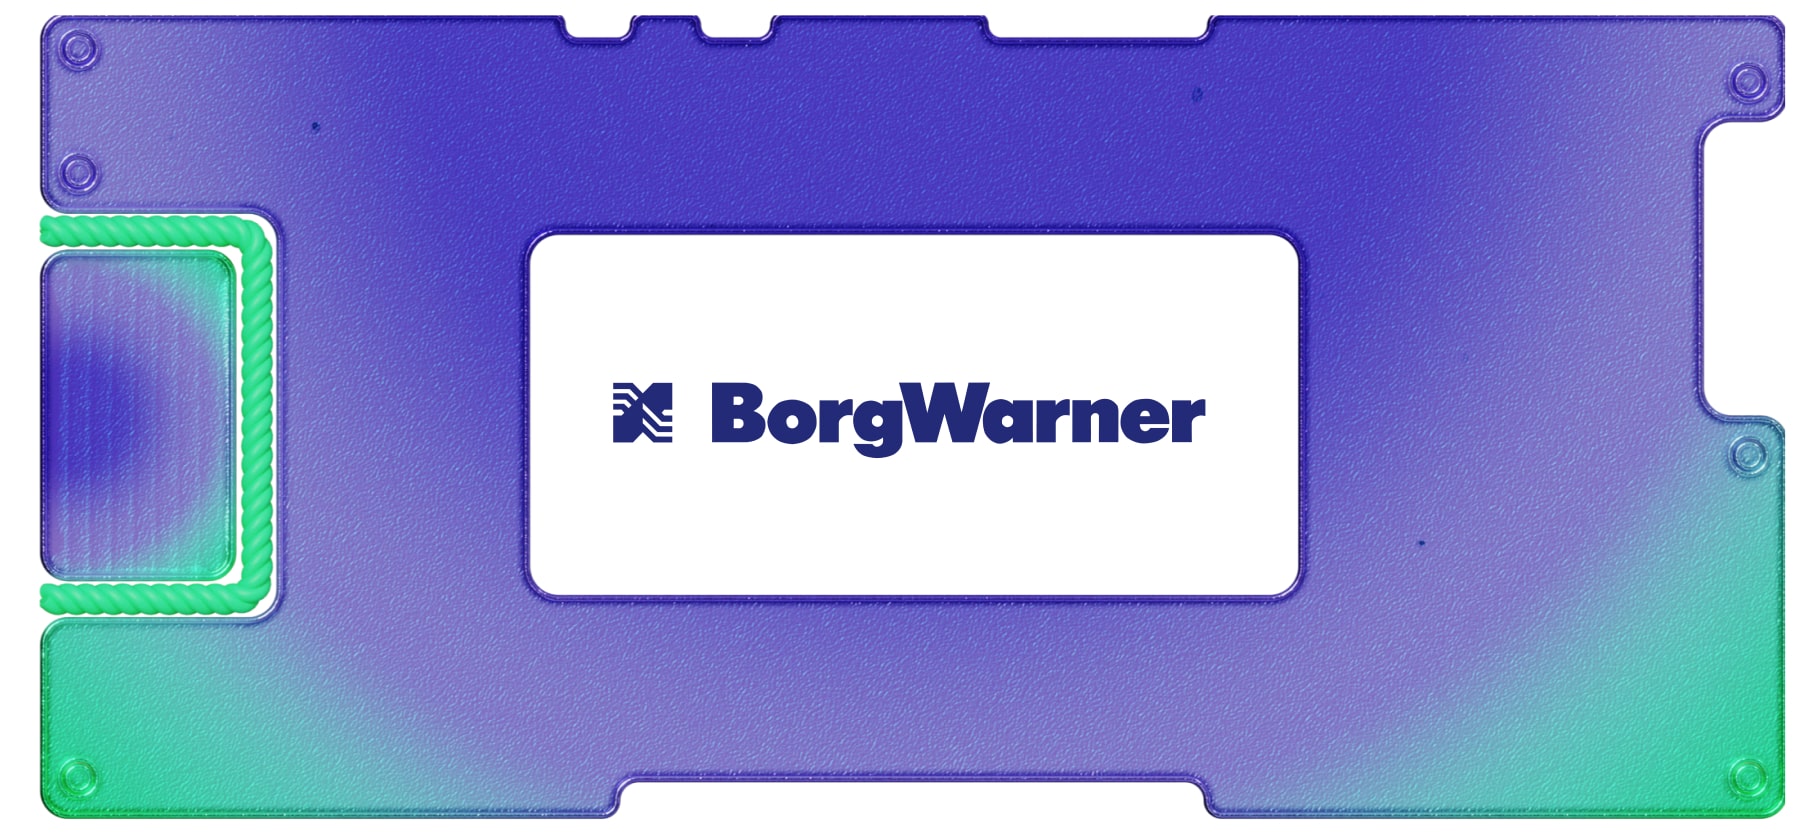 Итоги 2020 года для BorgWarner: падение прибыли и новые поглощения